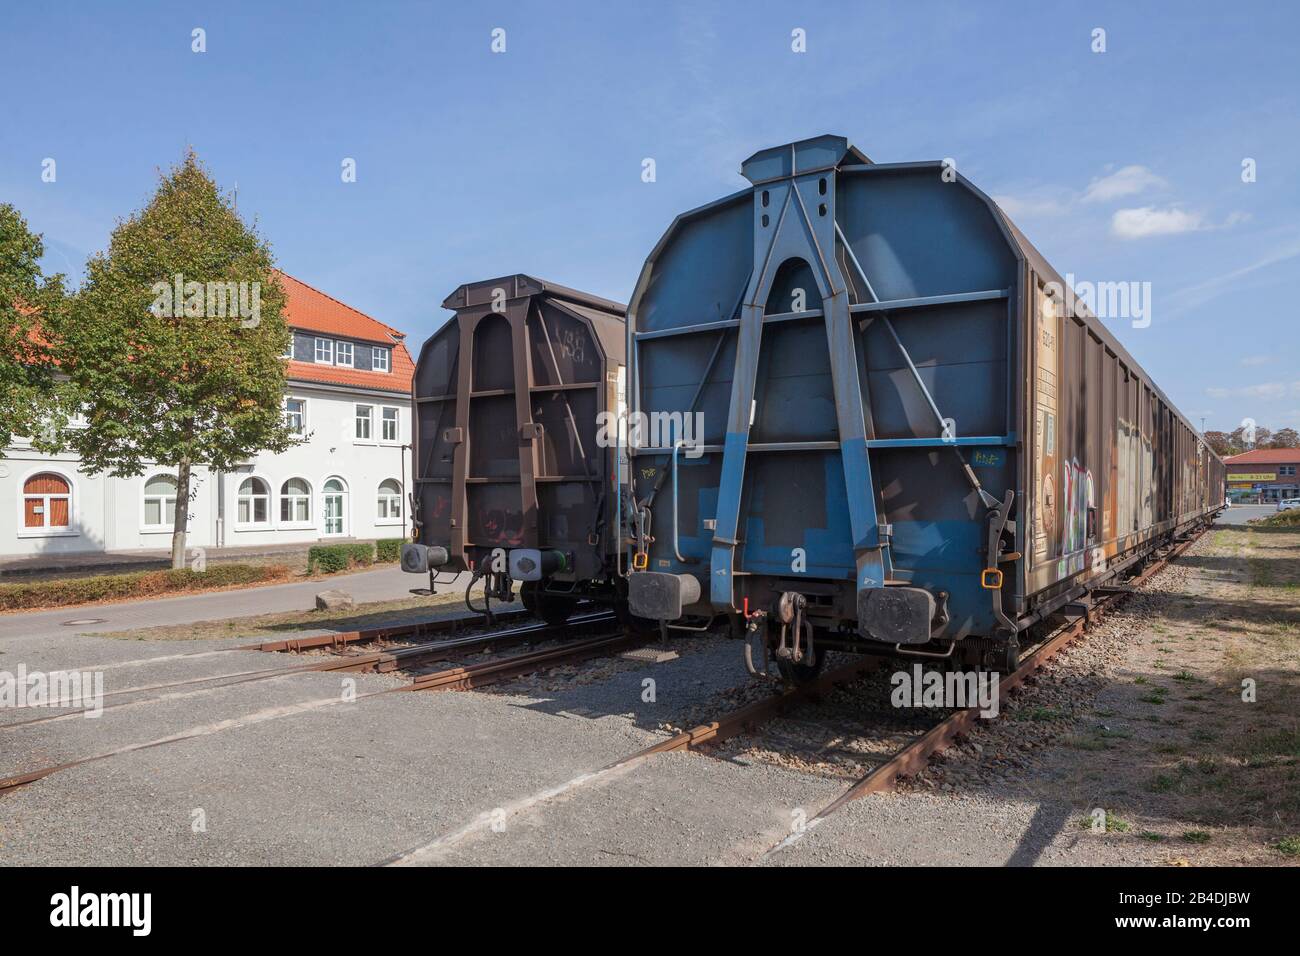 Alte Güterwagons Am Bahnhof, Hoya, Niedersachsen, Deutschland, Europa Foto Stock